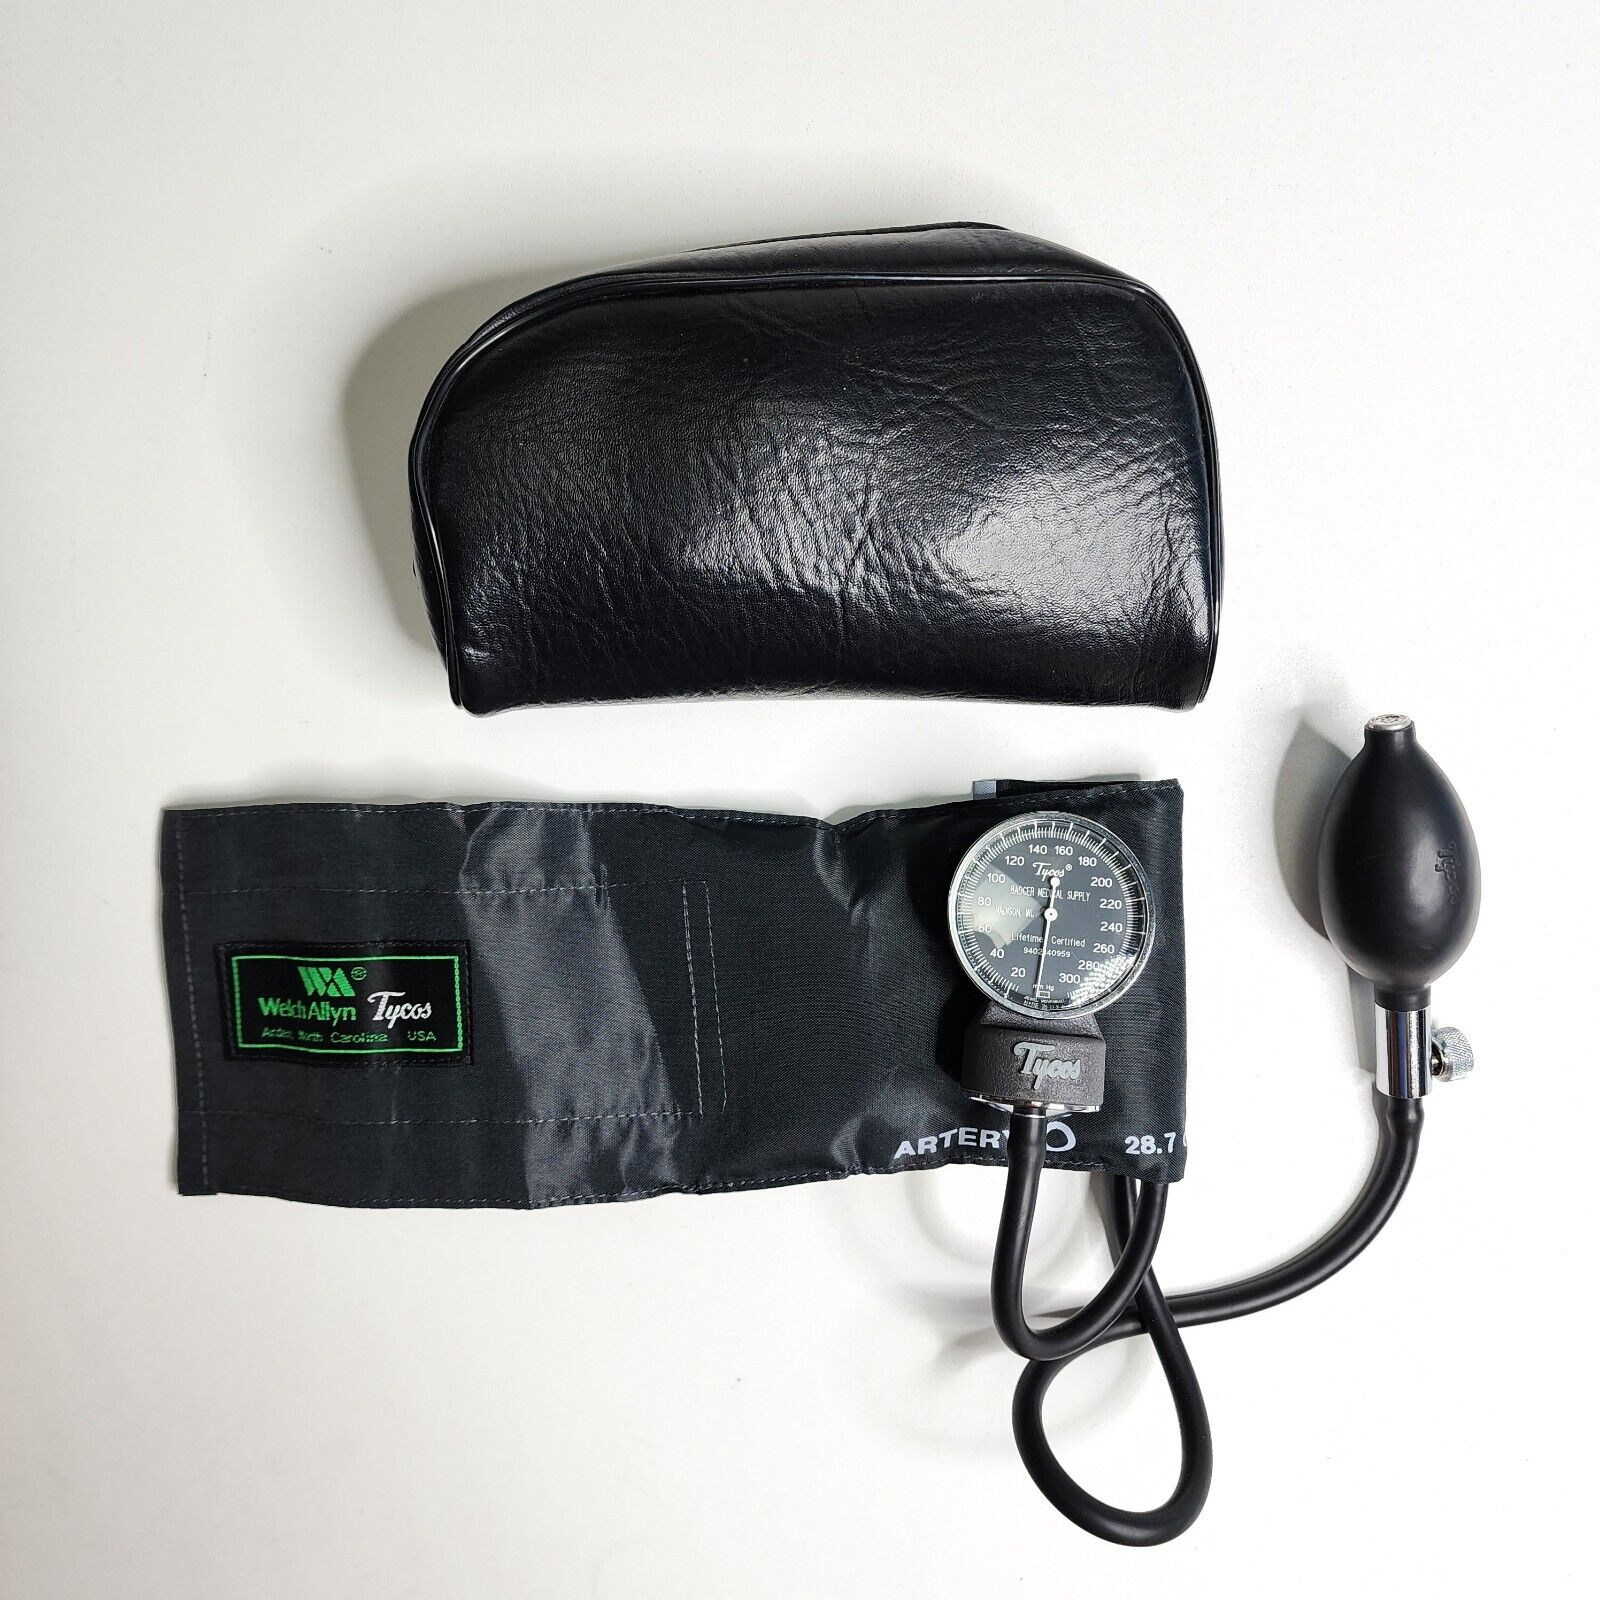 TYCOS Welch Allyn Sphygmomanometer Blood Pressure Cuff Child 28.7 cm Max w/ Case